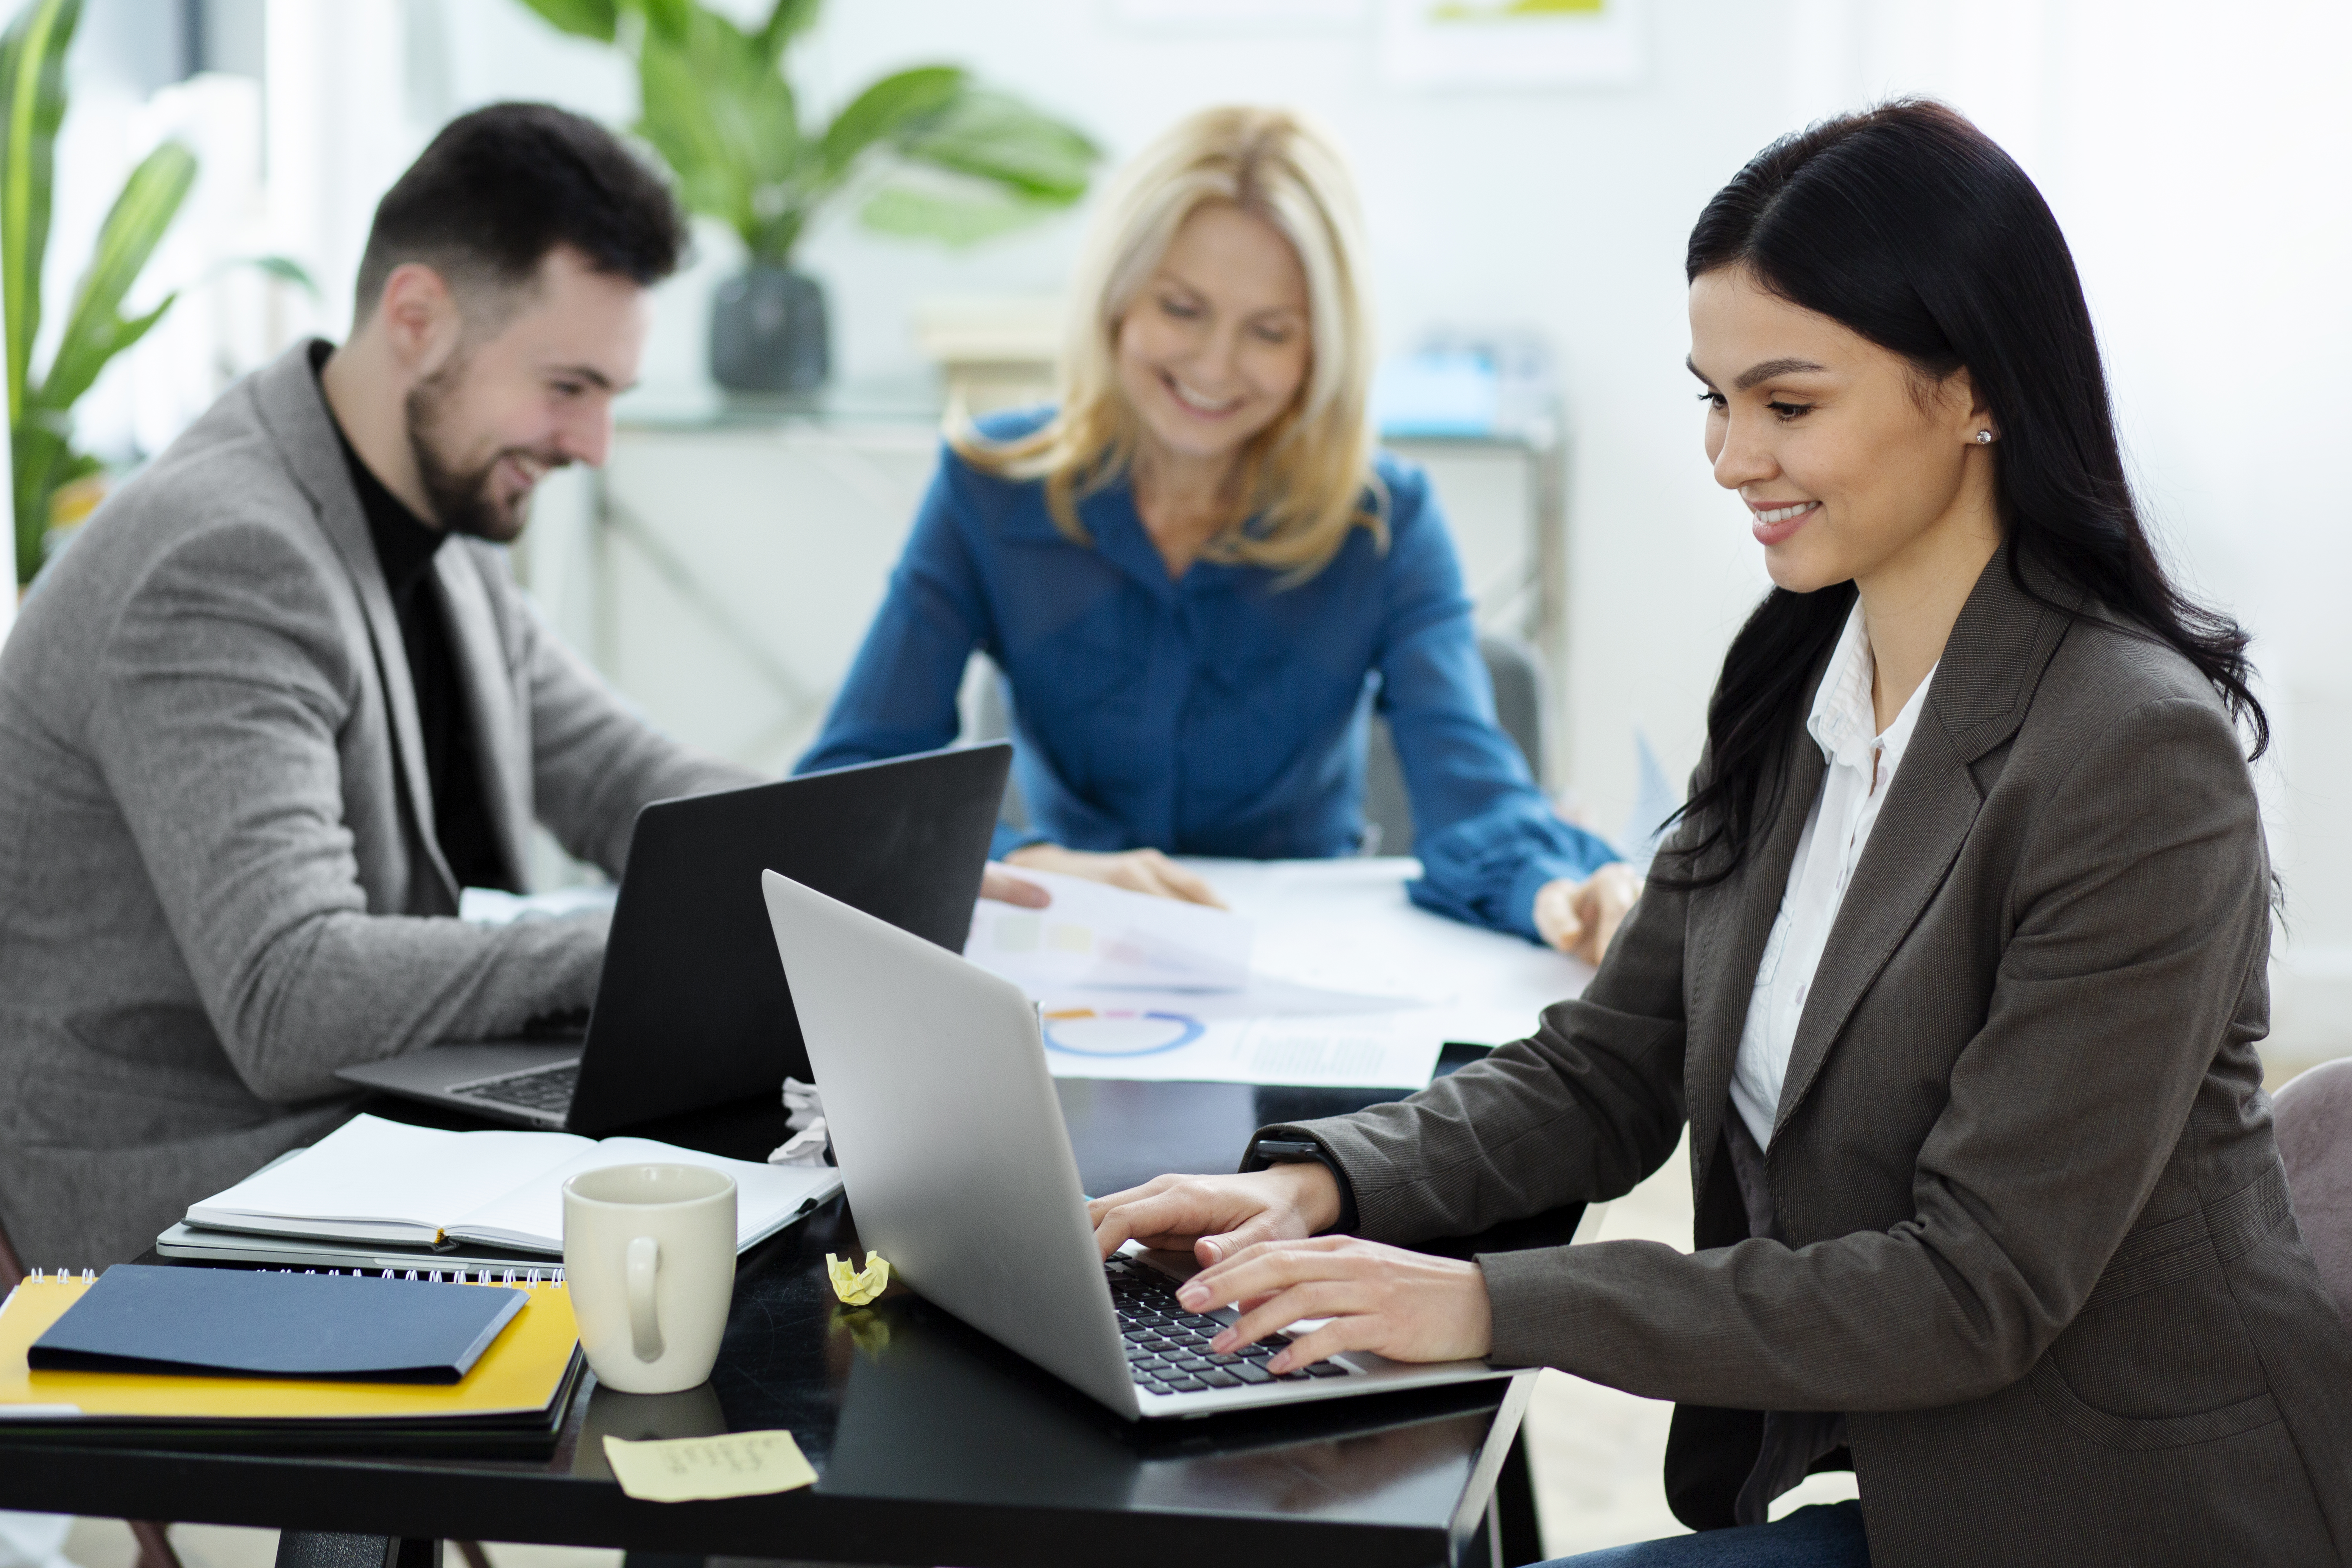 6 Effortless HR Management Solutions